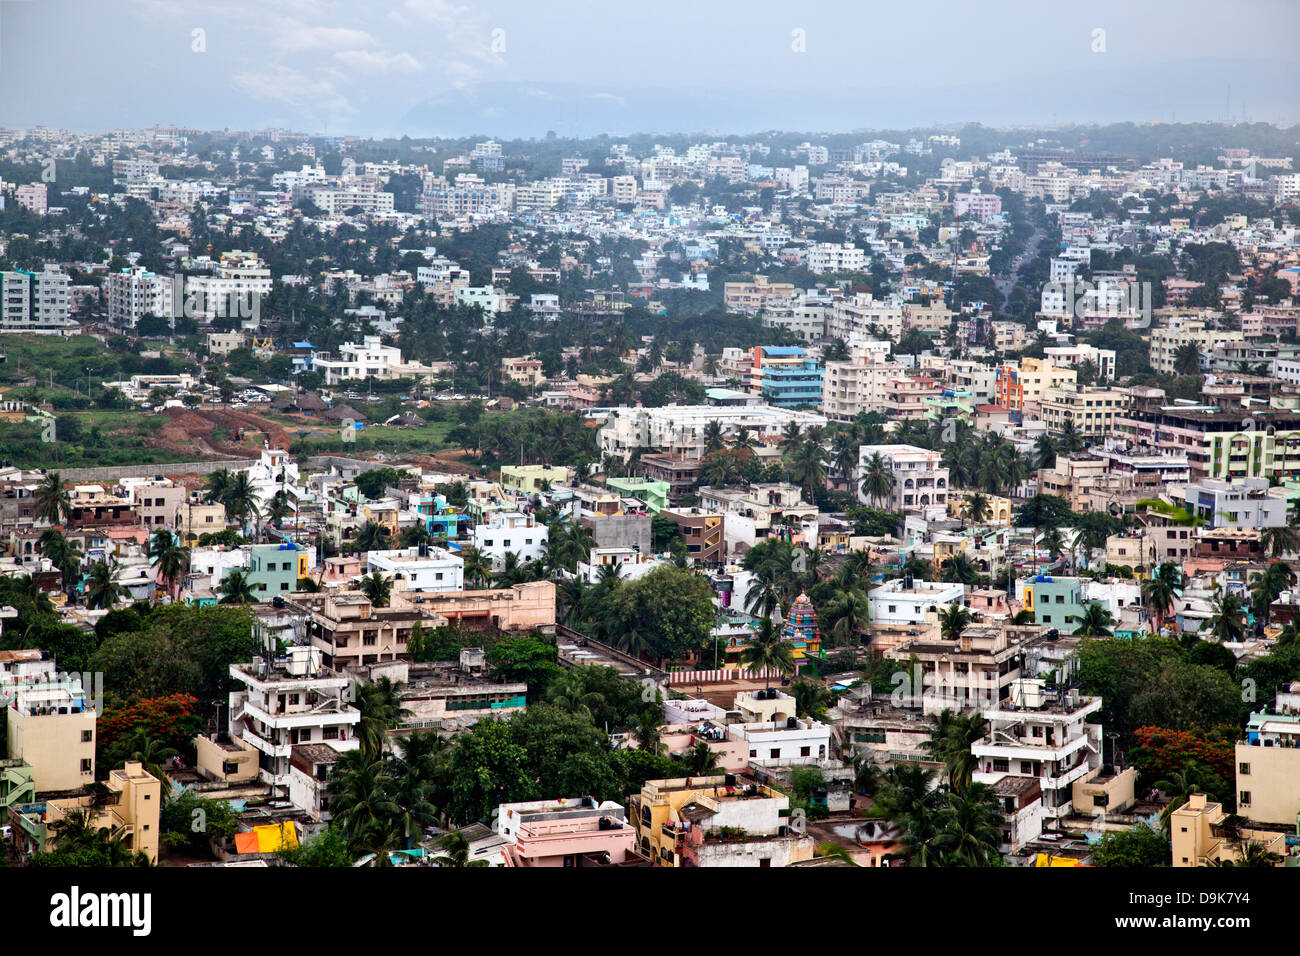 Vue aérienne d'une ville, Visakhapatnam, Andhra Pradesh, Inde Banque D'Images